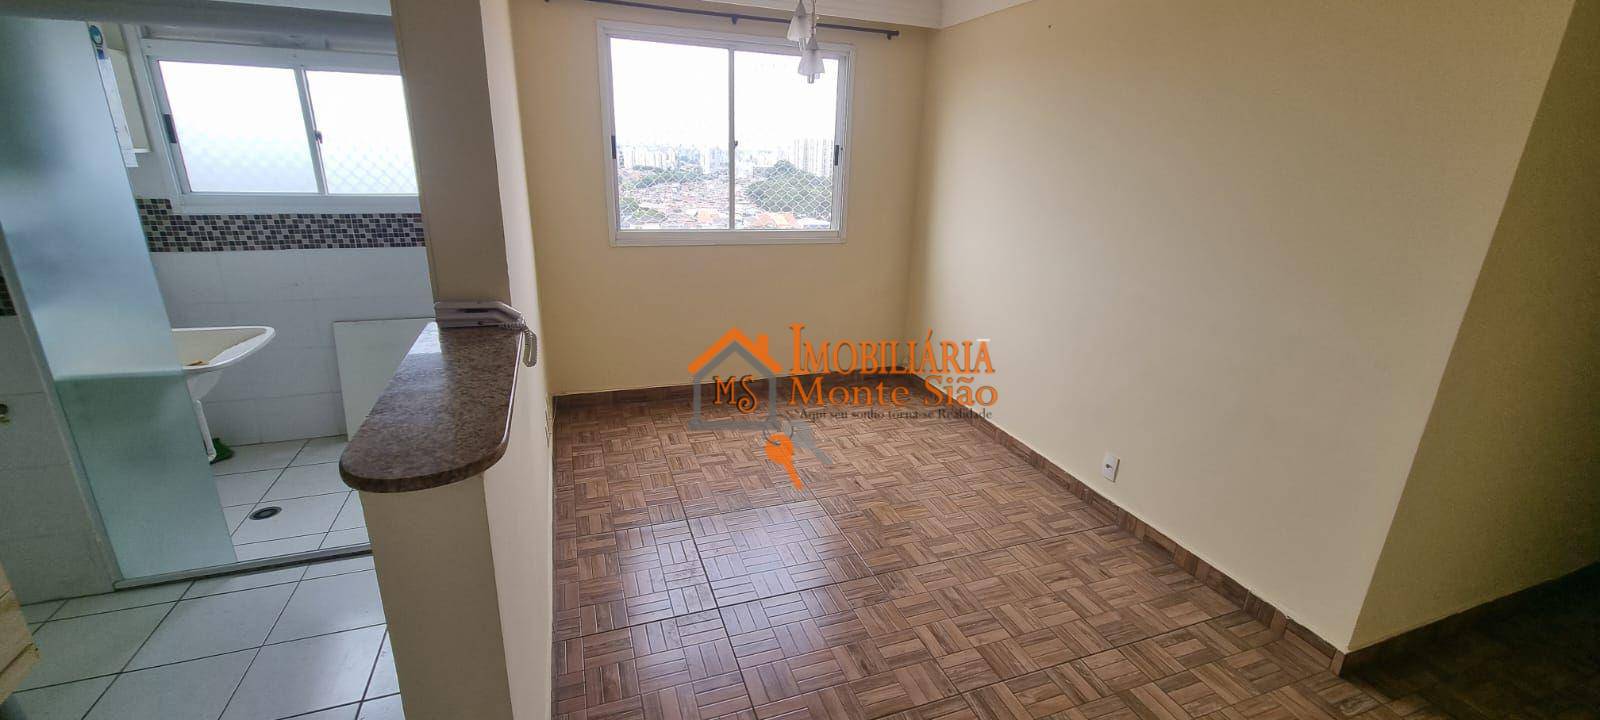 Apartamento com 2 dormitórios à venda, 44 m² por R$ 265.000,00 - Jardim Las Vegas - Guarulhos/SP